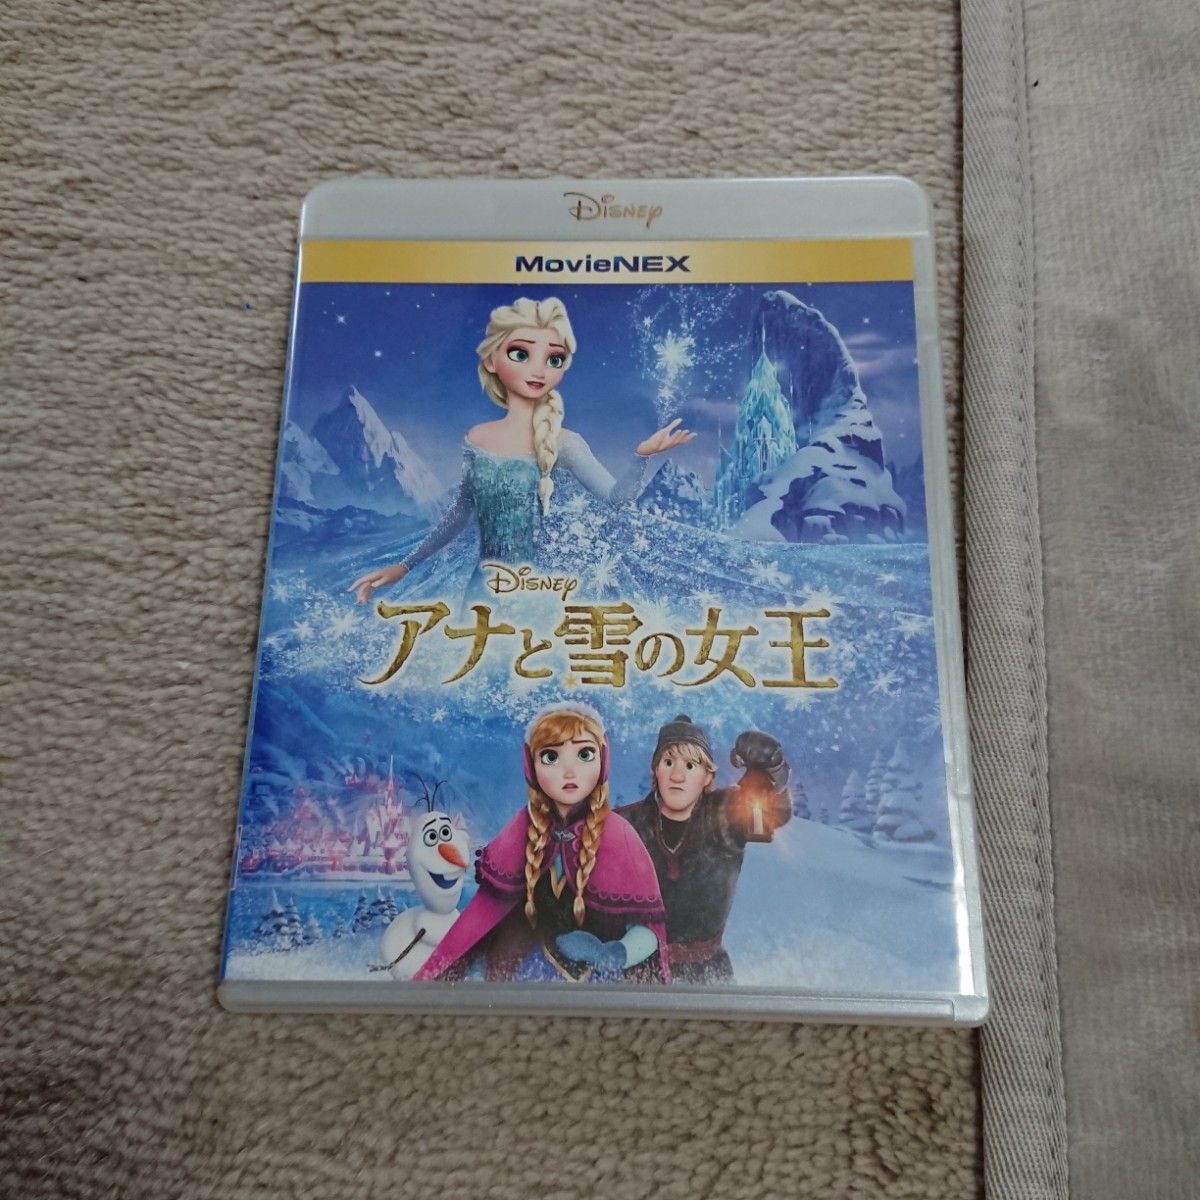 アナと雪の女王 MovieNEX [ブルーレイ+DVD +MovieNEXワールド] [Blu-ray]